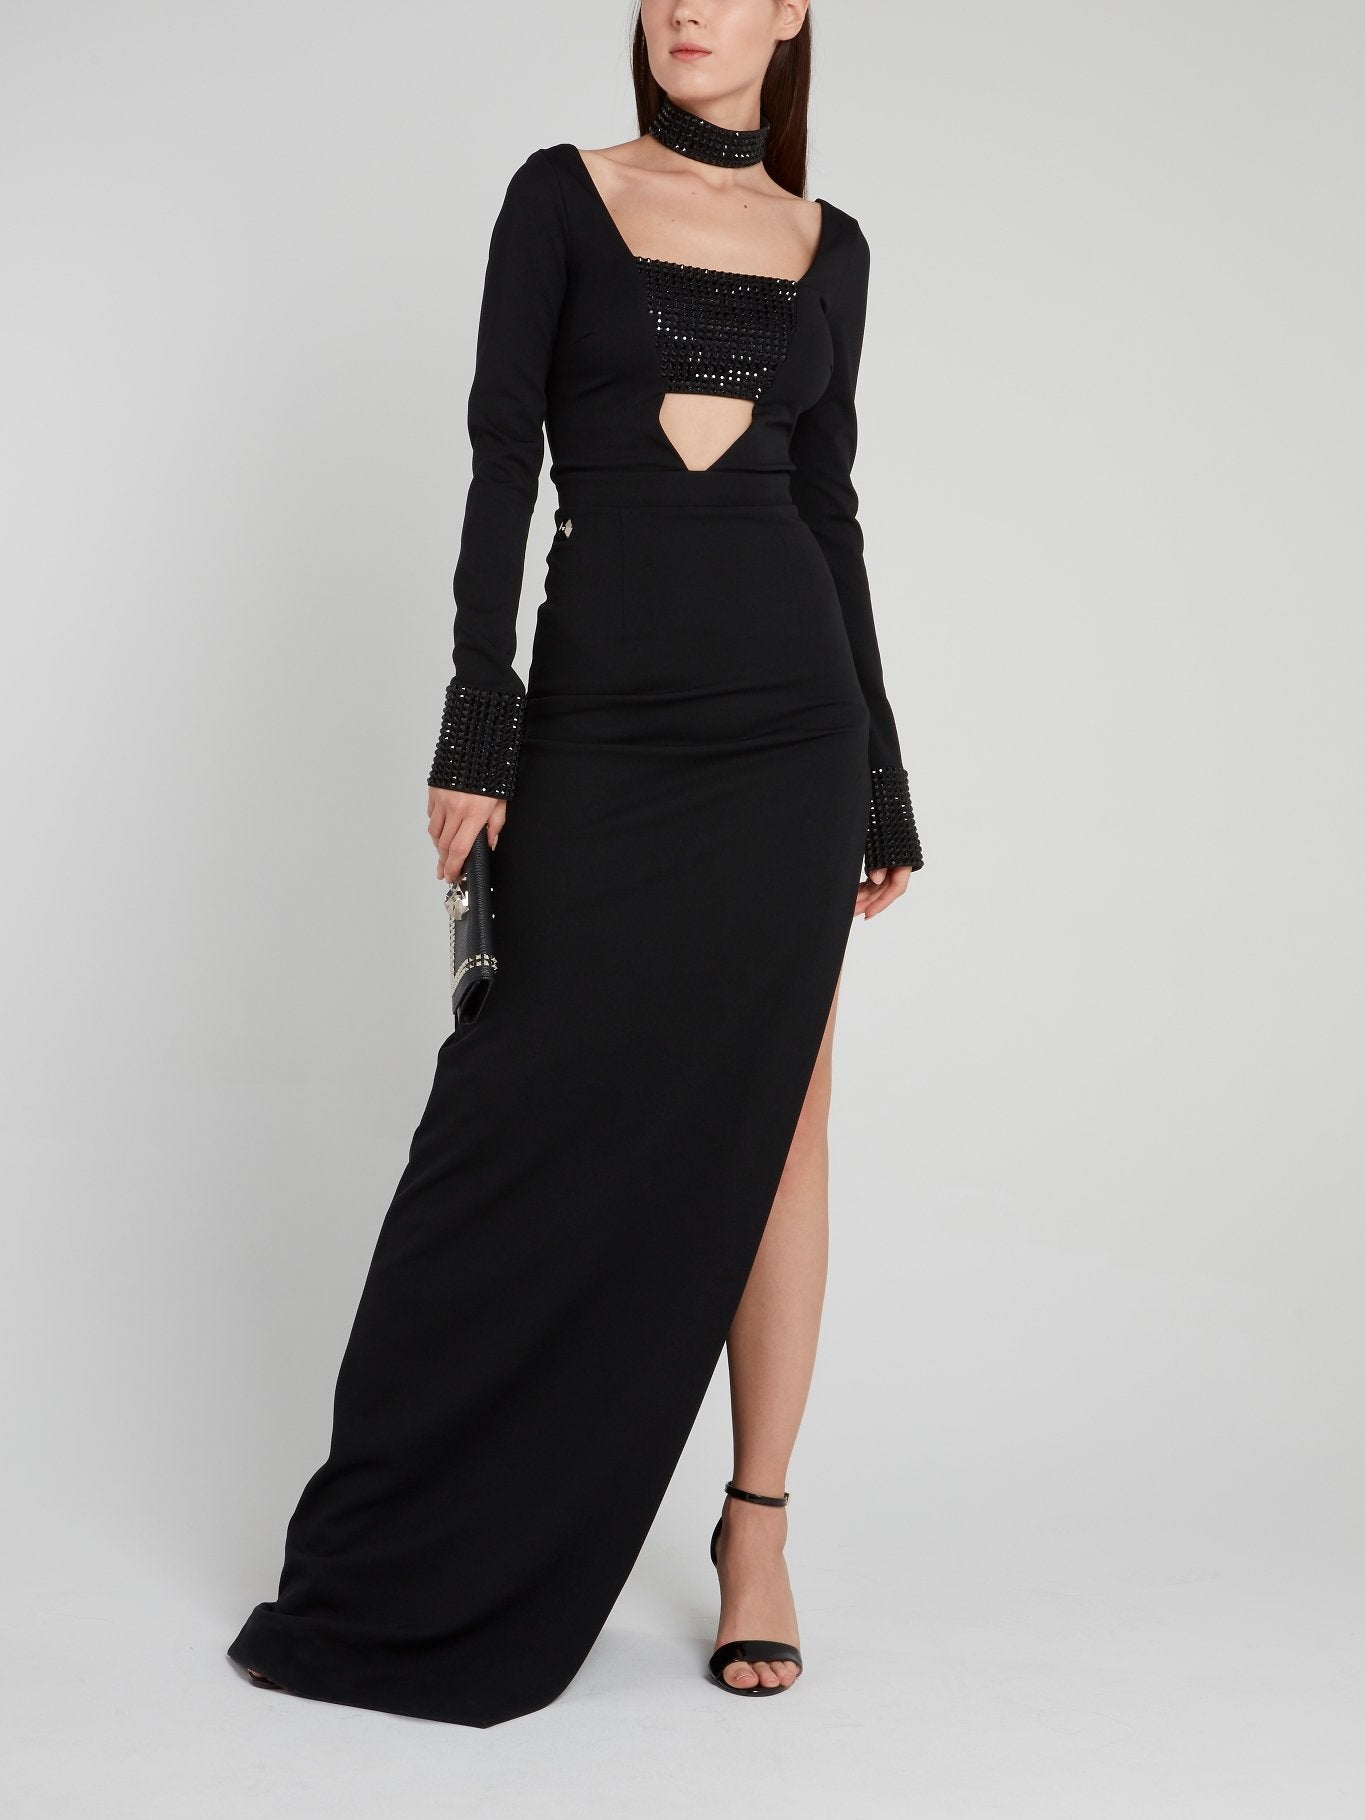 Jessa Black Embellished Slit Dress